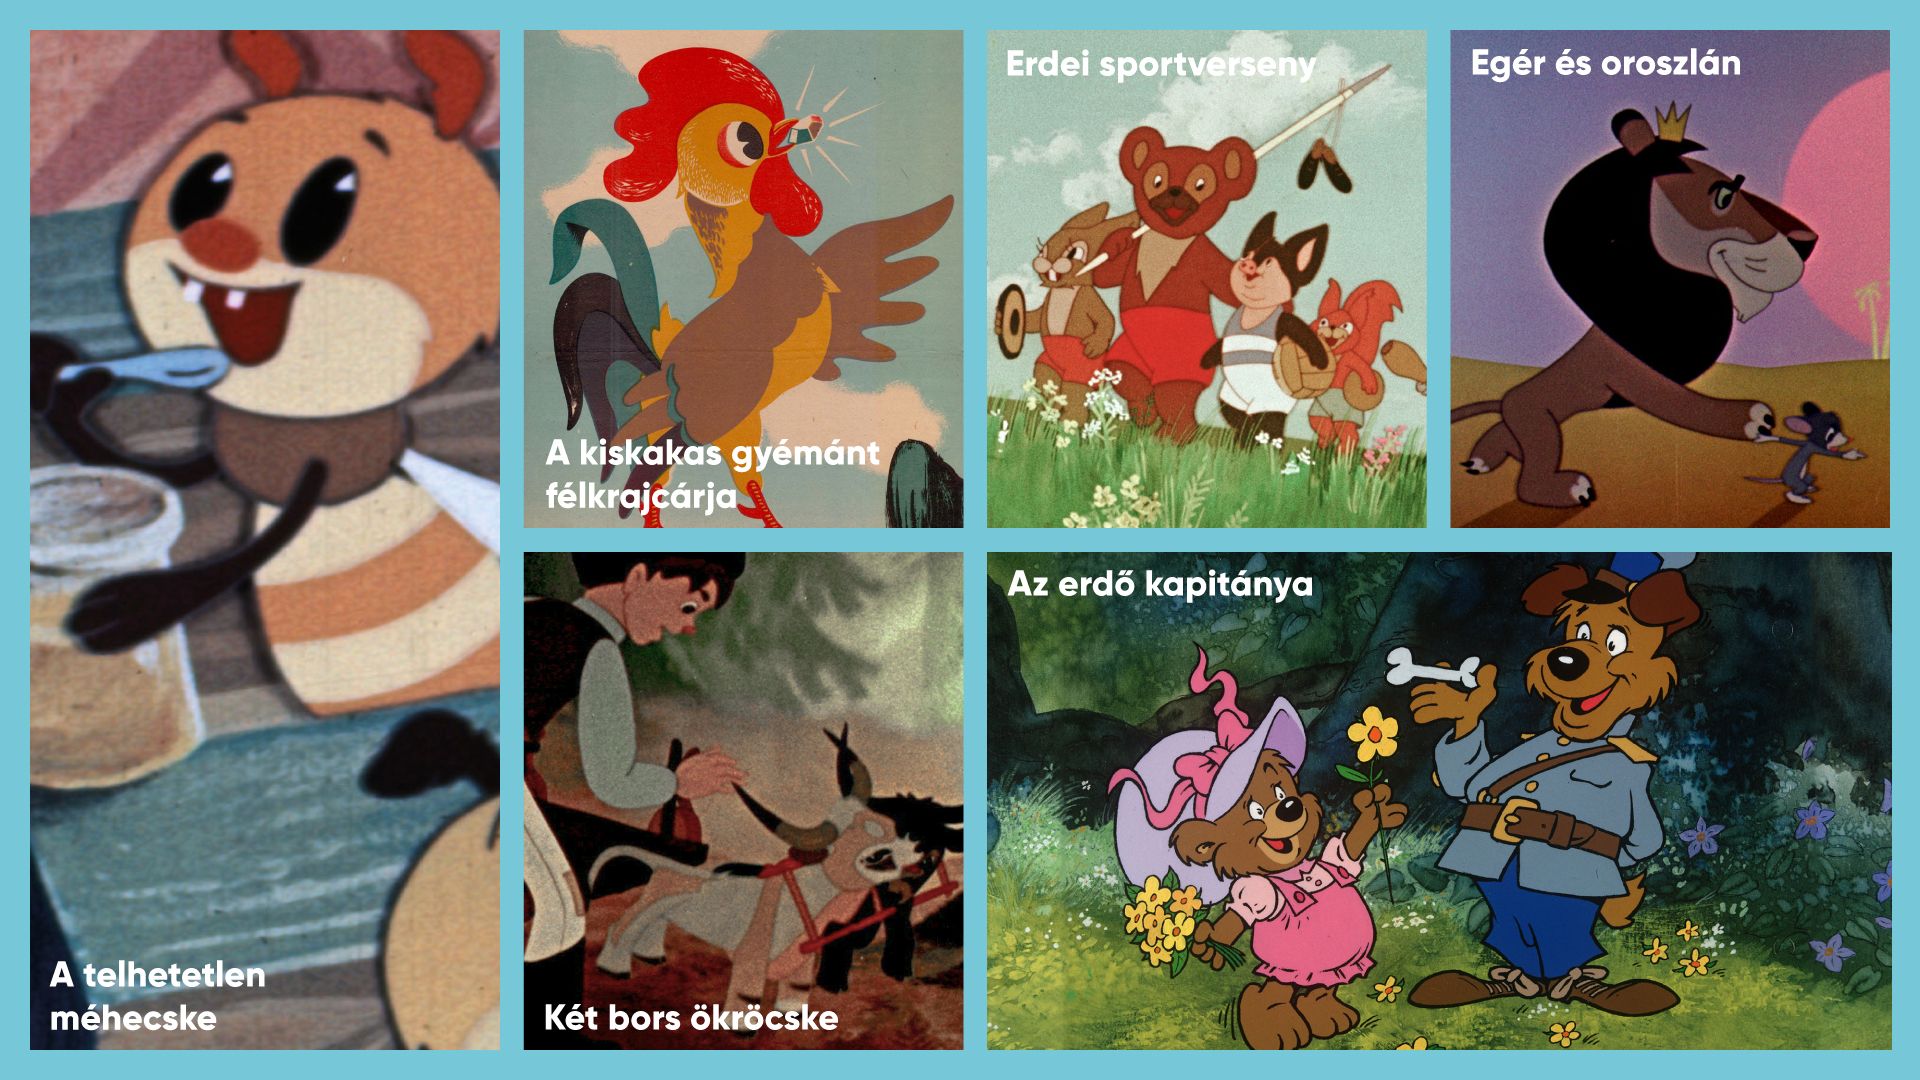 Gyermeknap alkalmából egész hétvégén ingyenesen nézhetünk magyar animációs filmeket